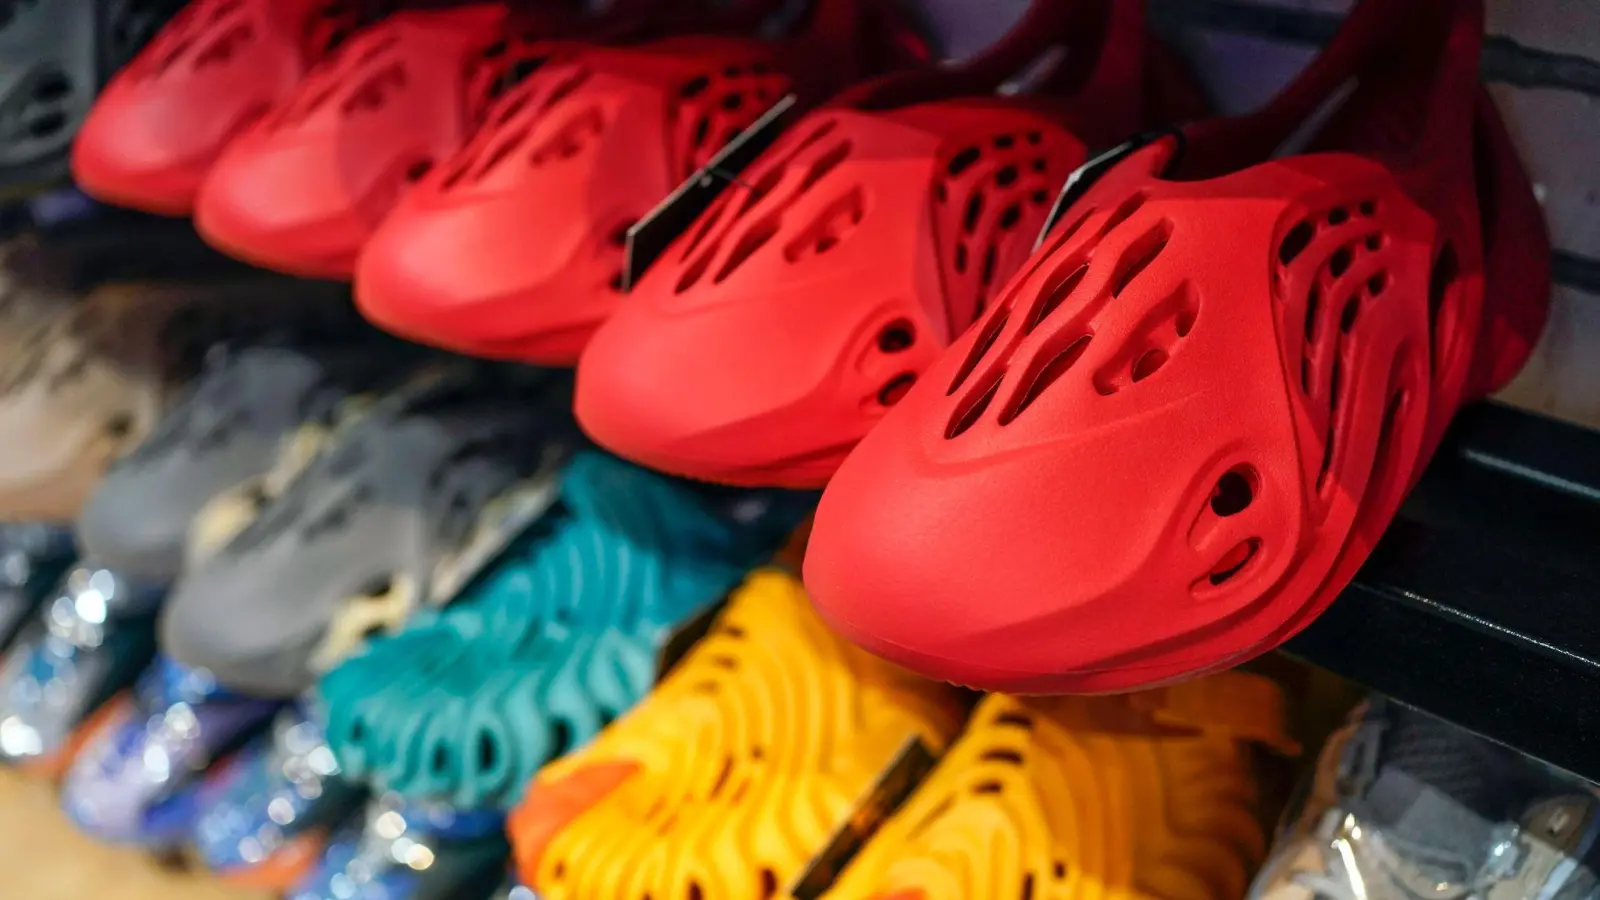 Yeezy-Schuhe von Adidas. (Foto: Seth Wenig/AP/dpa)